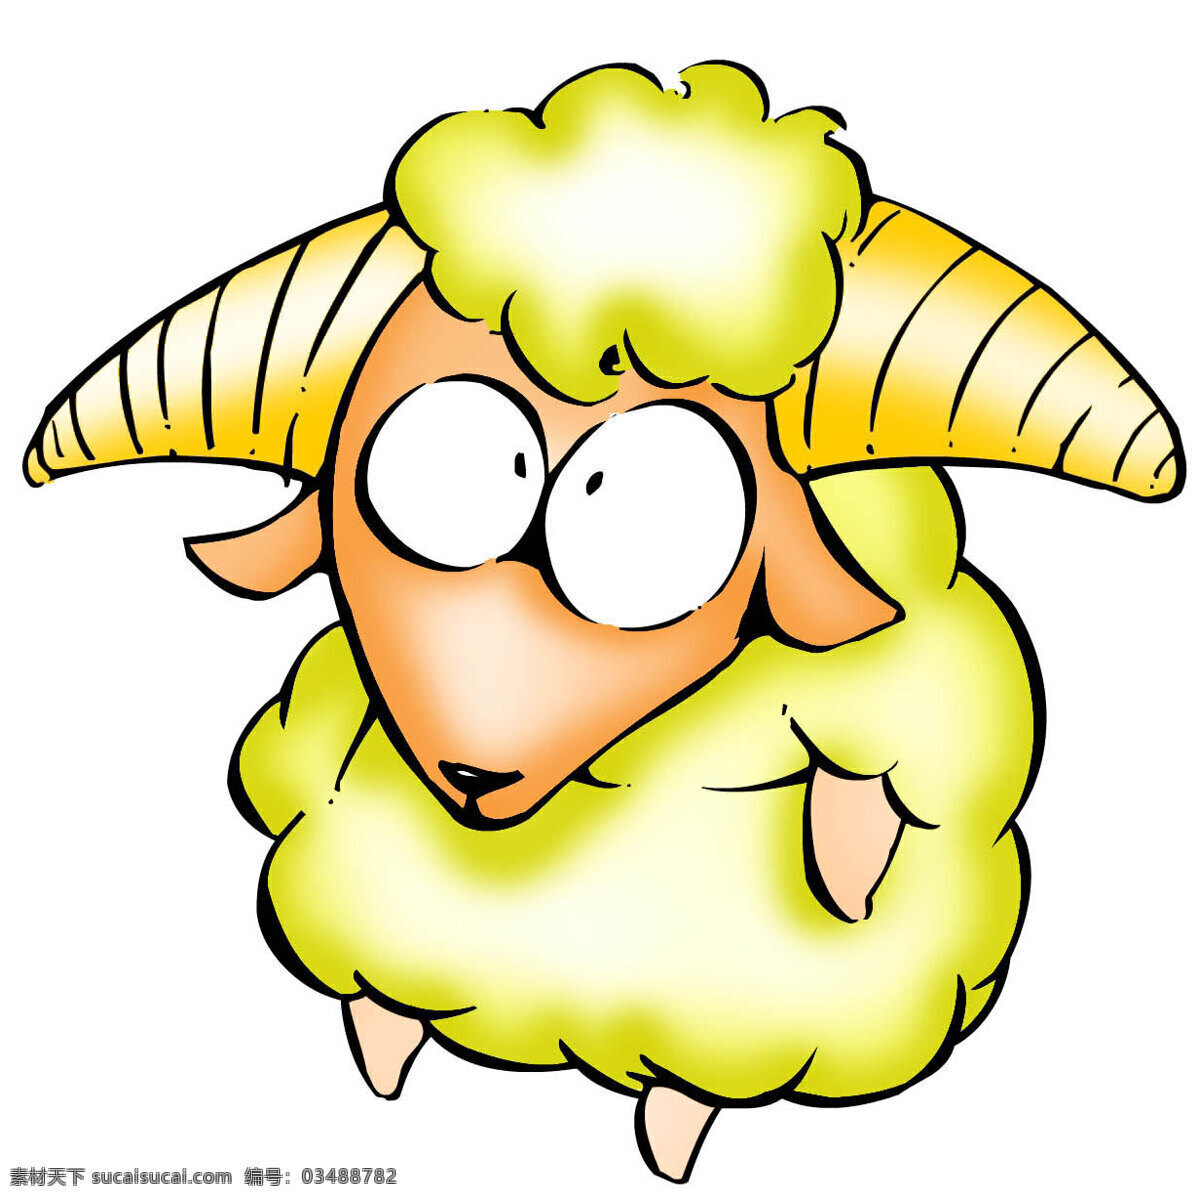 牧羊座 白羊座 星座 插图 星座插图 设计素材 牧羊座篇 书画美术 白色